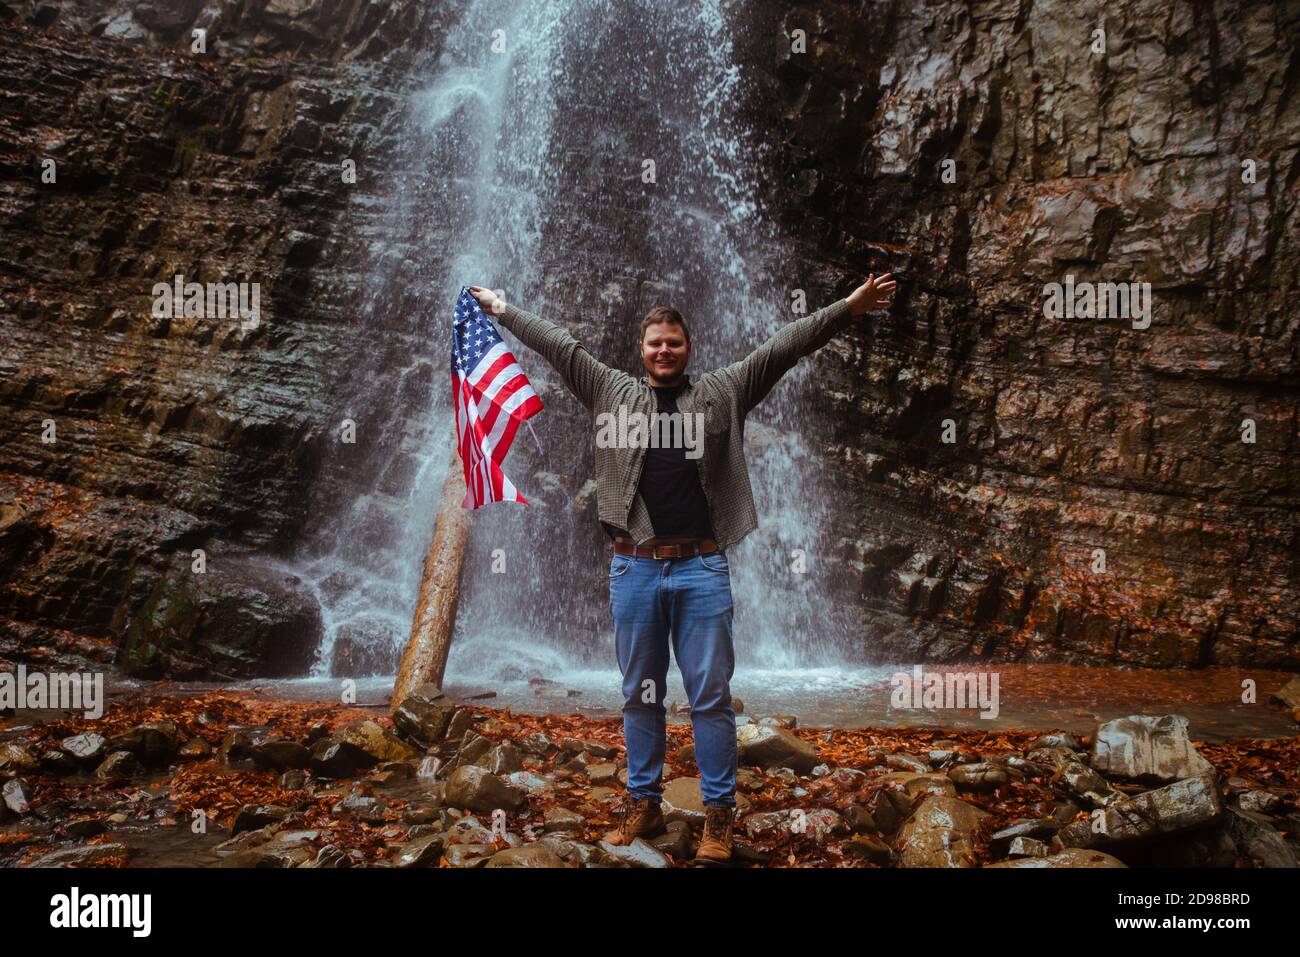 Mann mit USA-Flagge Wasserfall im Hintergrund Stockfoto